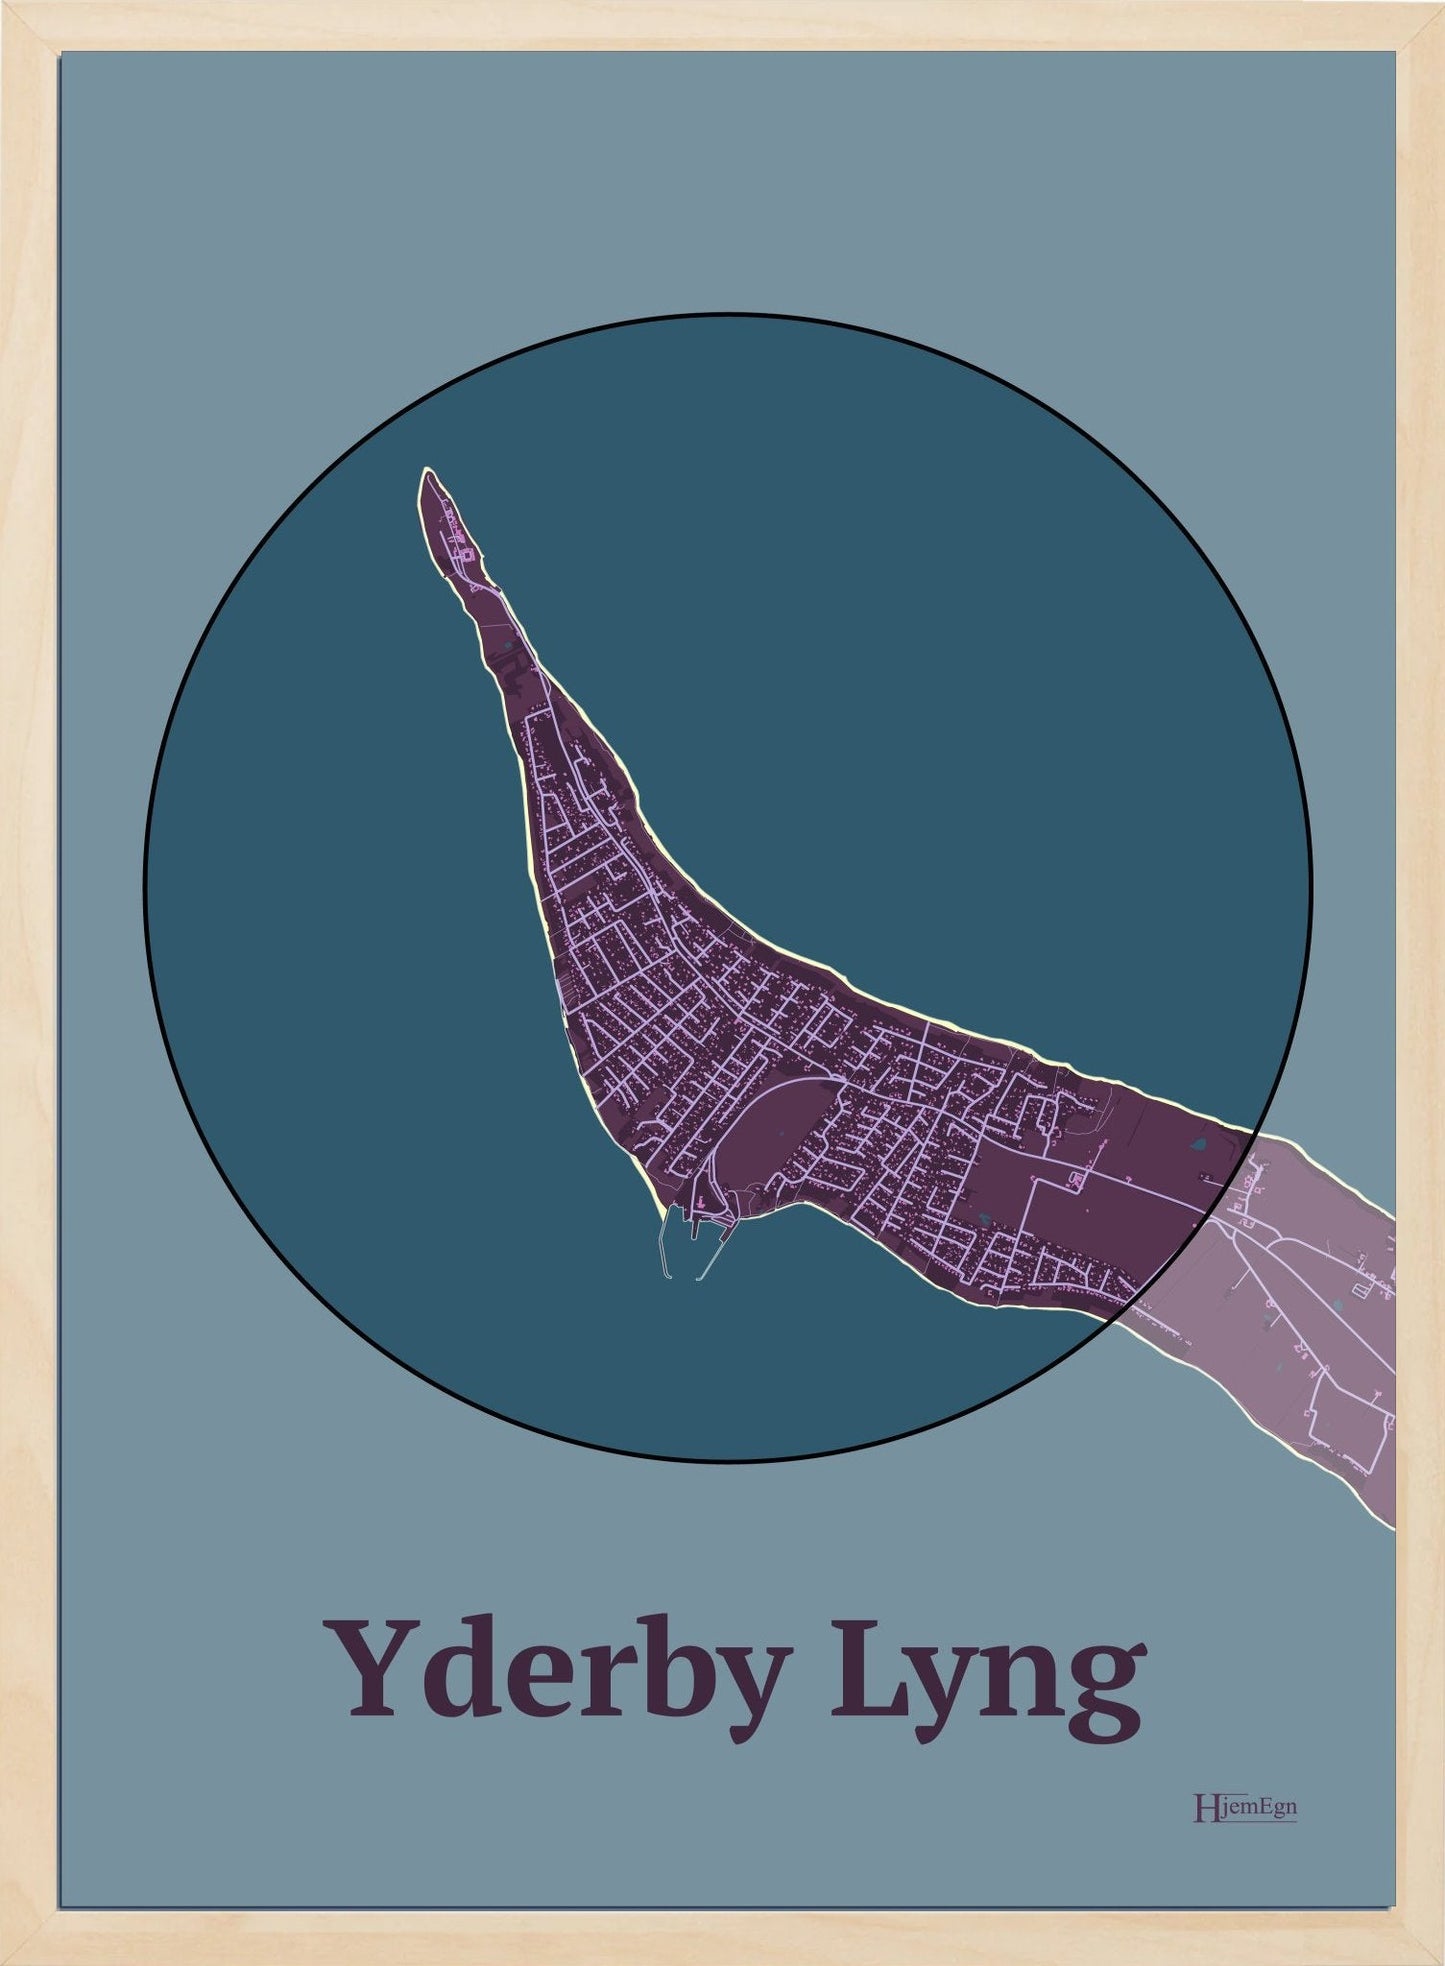 Yderby Lyng plakat i farve mørk rød og HjemEgn.dk design centrum. Design bykort for Yderby Lyng